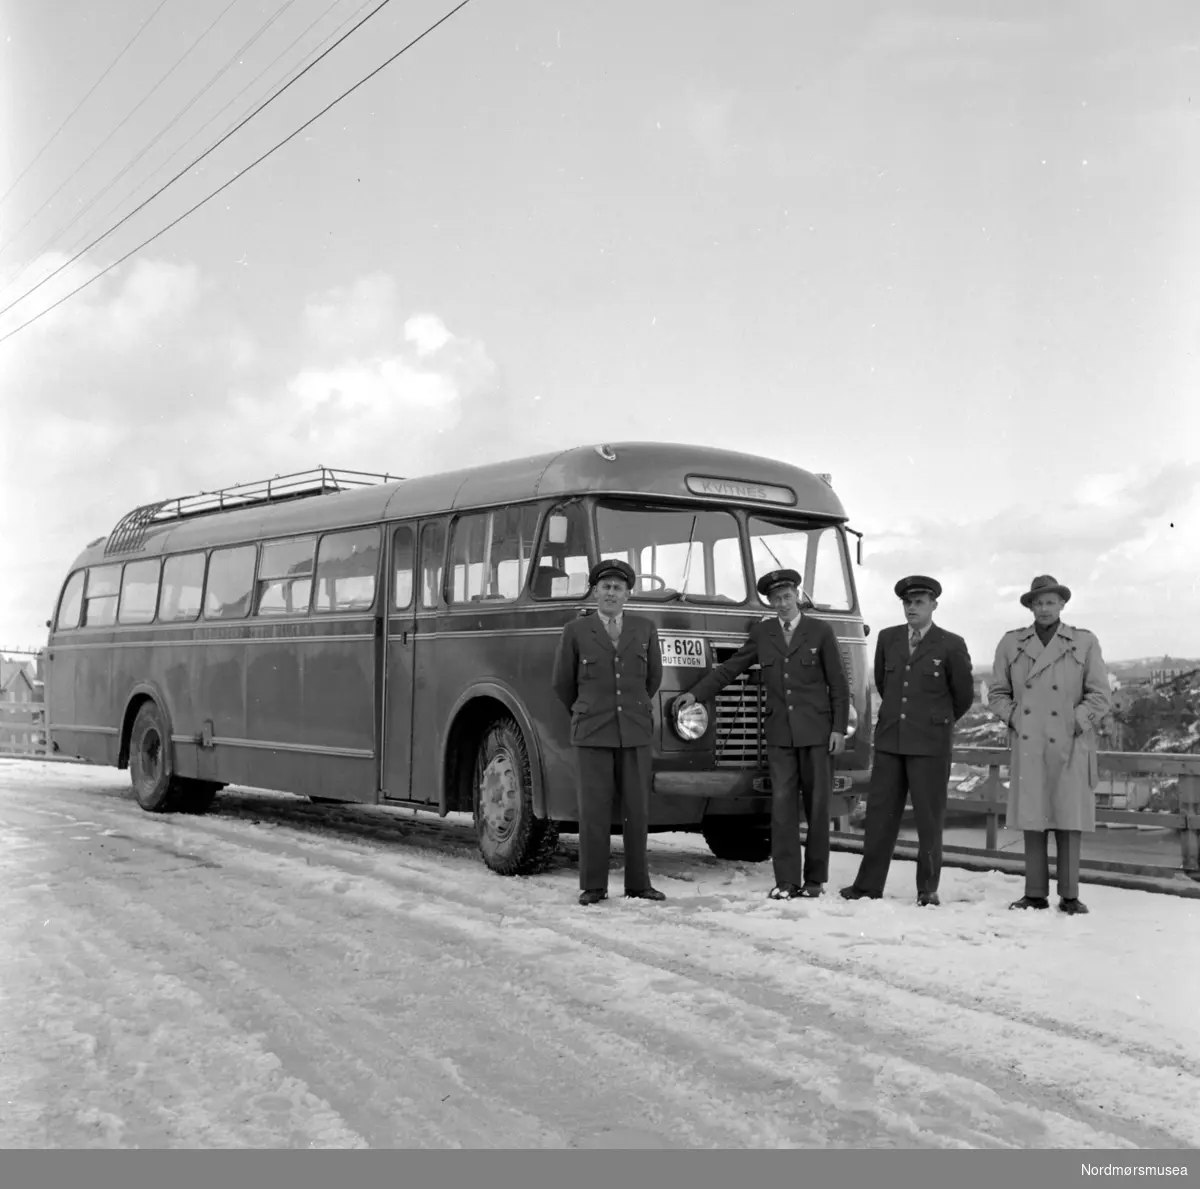 Rutebuss med skilt T-6120 fra Kristiansund og Frei billag med sjåfører stående like ved. Bussens destinasjon er satt til Kvitnes. Datering er trolig mellom 1950-1960. Fotograf er Nils Williams i Kristiansund. Fra Nordmøre museums fotosamlinger.